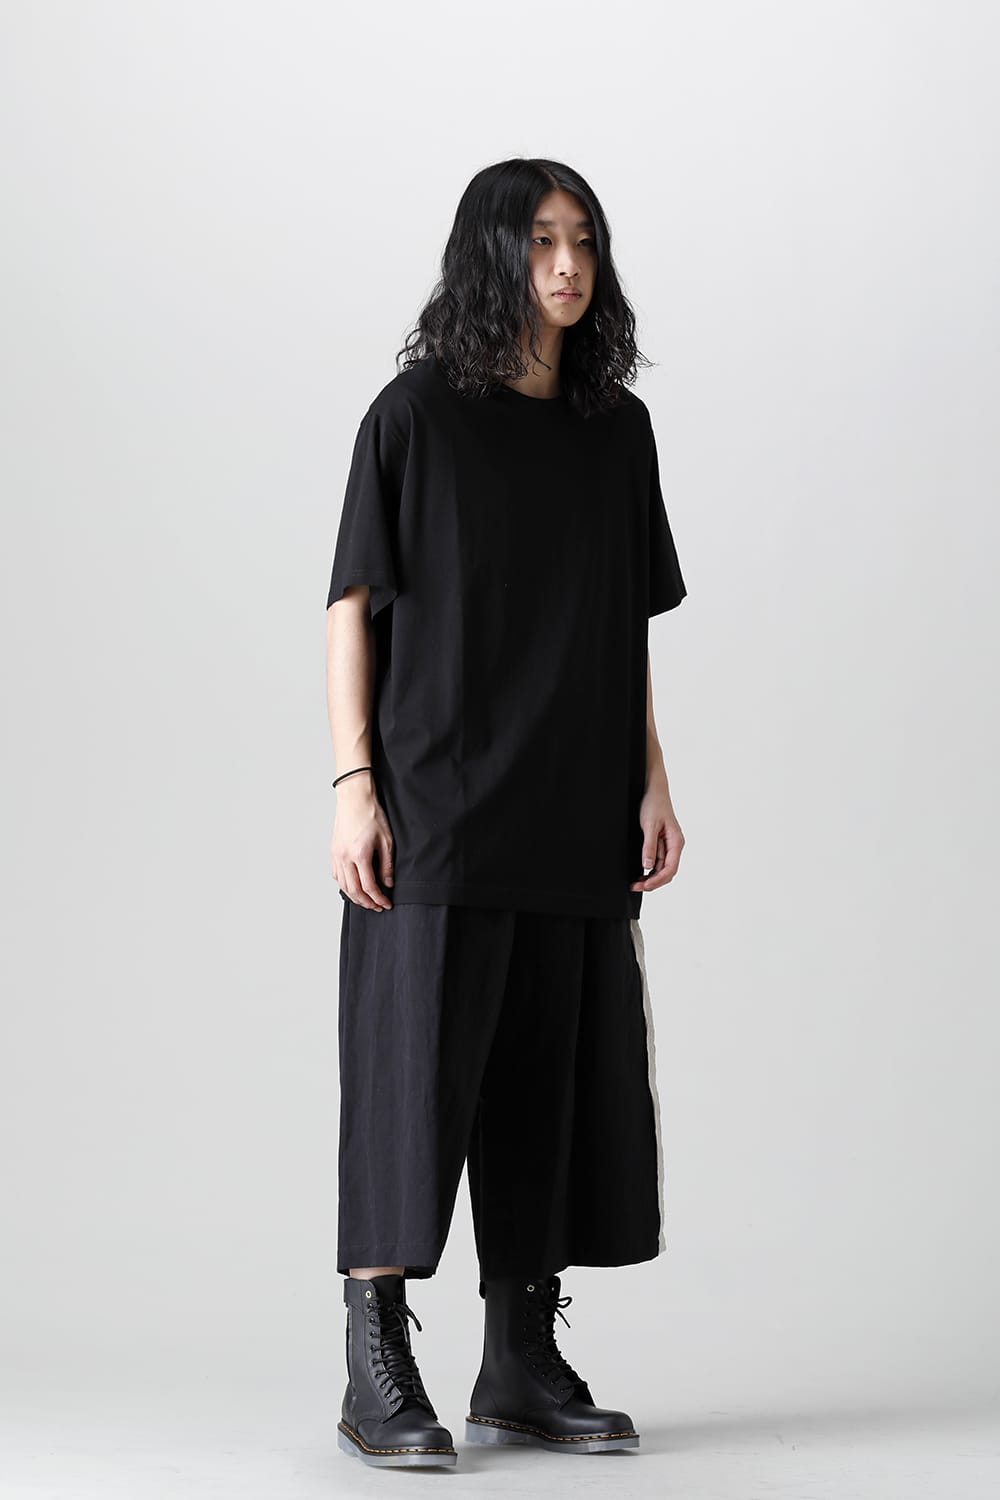 HG-T02-070-Black | 丸首 半袖Tシャツ ブラック | Yohji Yamamoto 